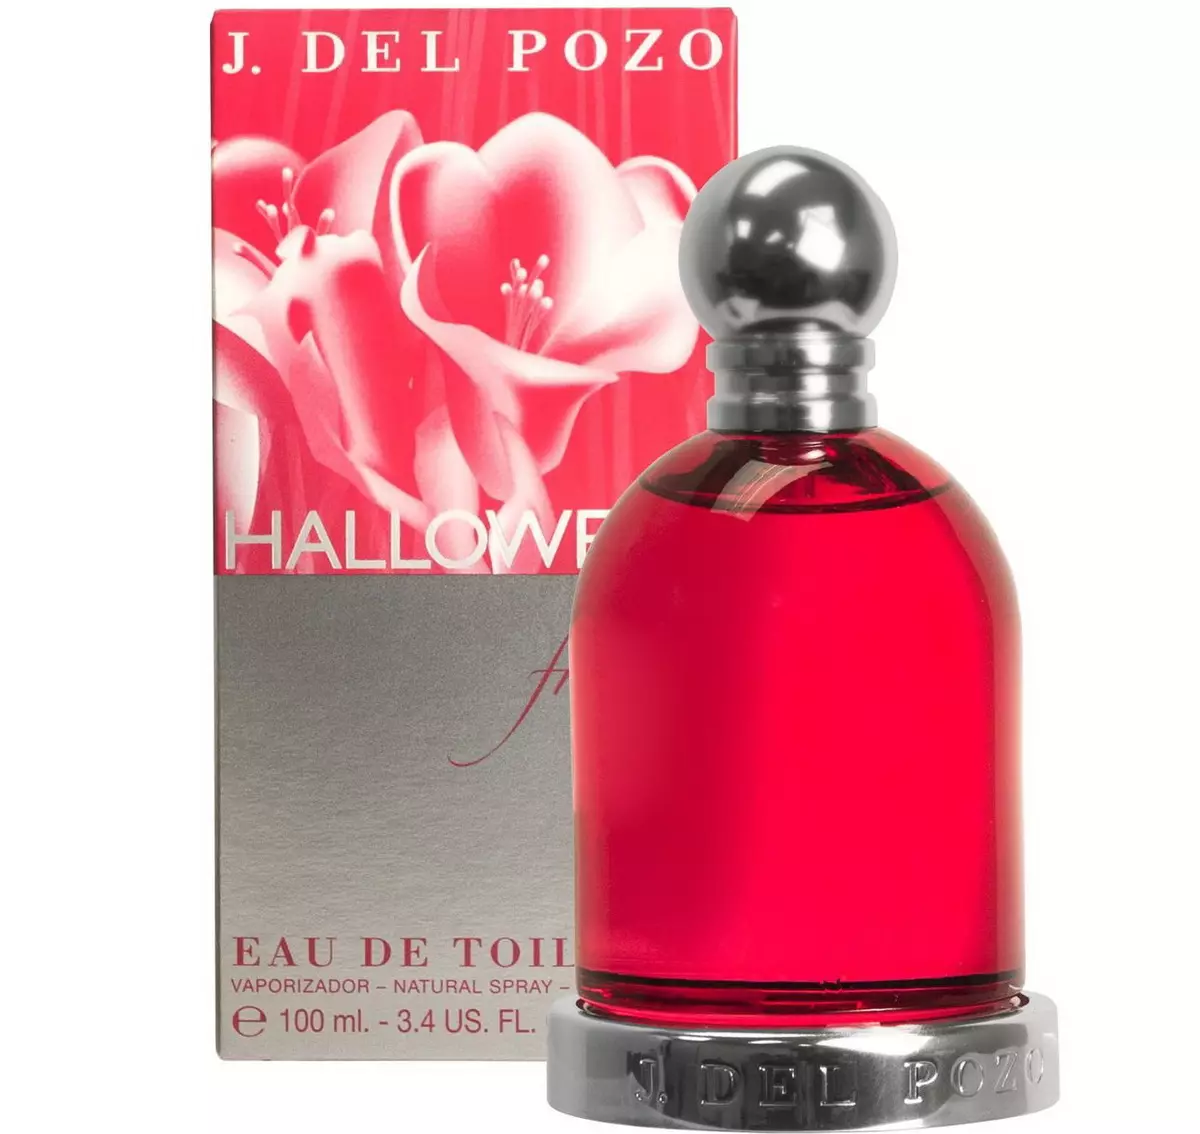 Halloween parfüümi: naiste ja meeste parfüümi, mees tualettvesi, aroomiotsingud 23440_20